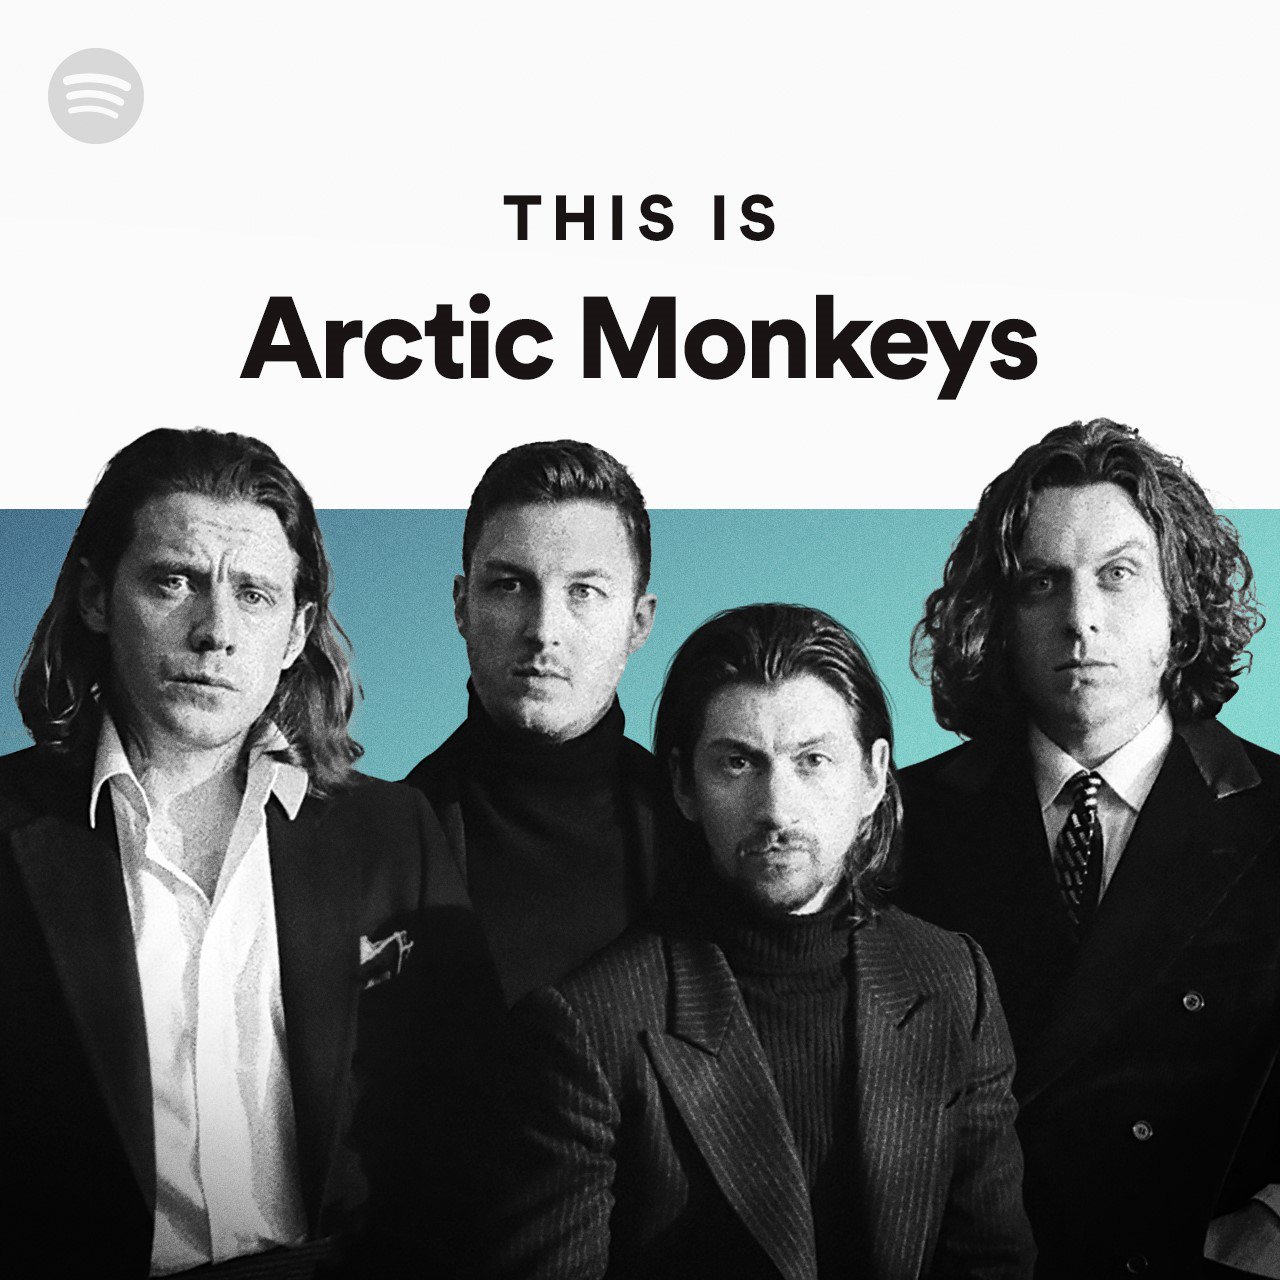 Descargar Discografia: Arctic Monkeys - Mega Discografias Completas